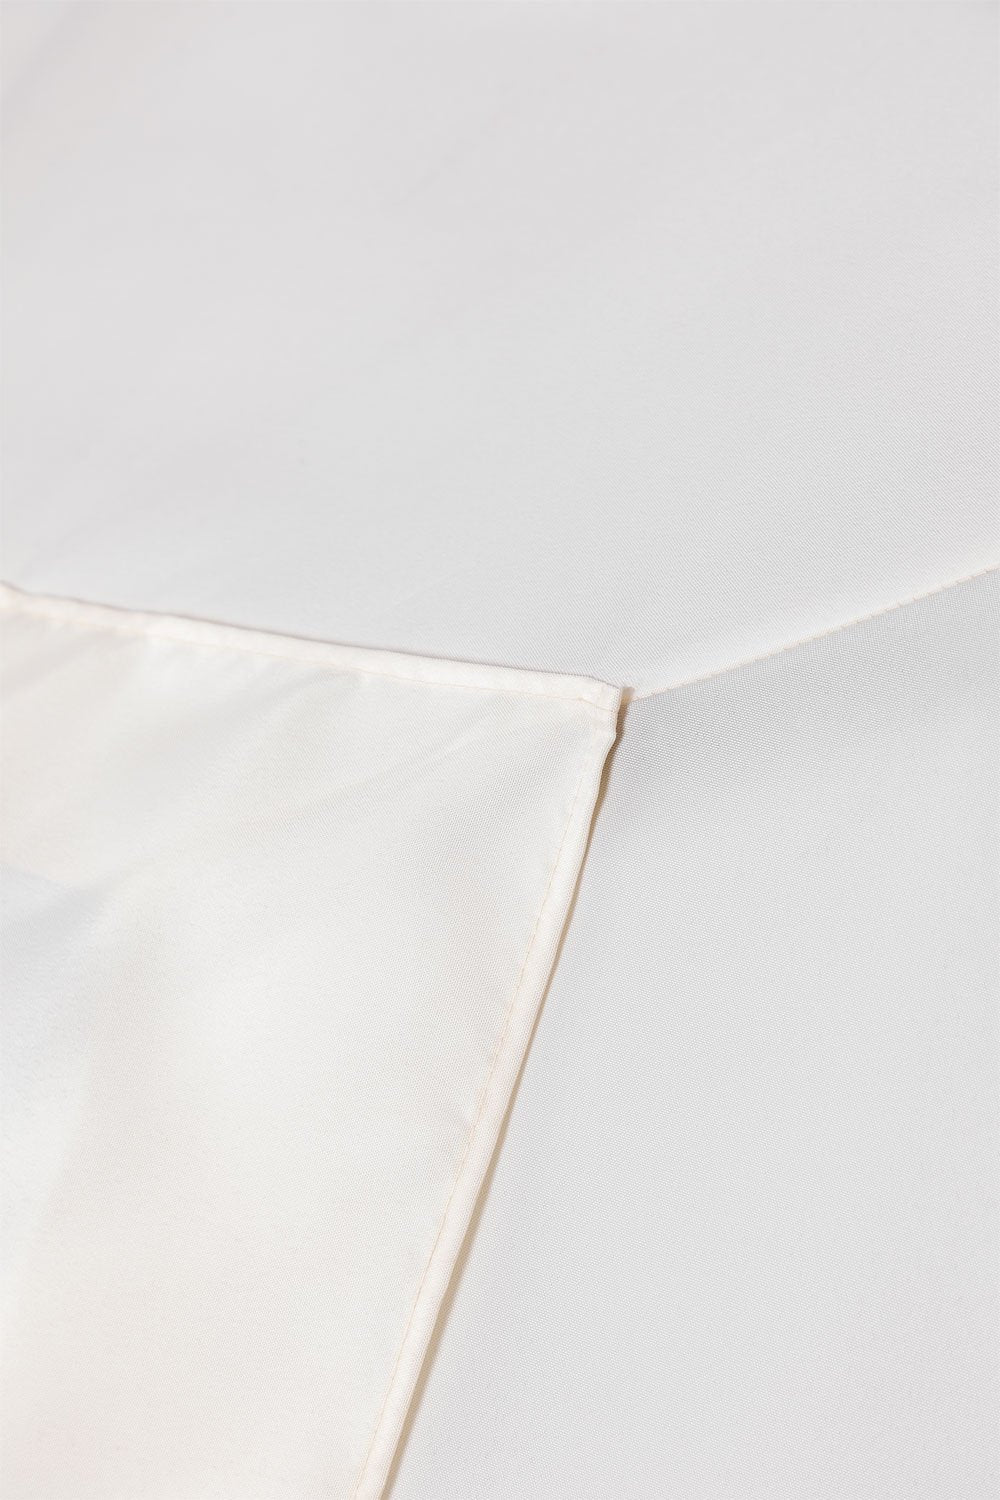 Sombrilla en Tela y Acero (200x300 cm) Itzal Blanco Gardenia -  SKLUM